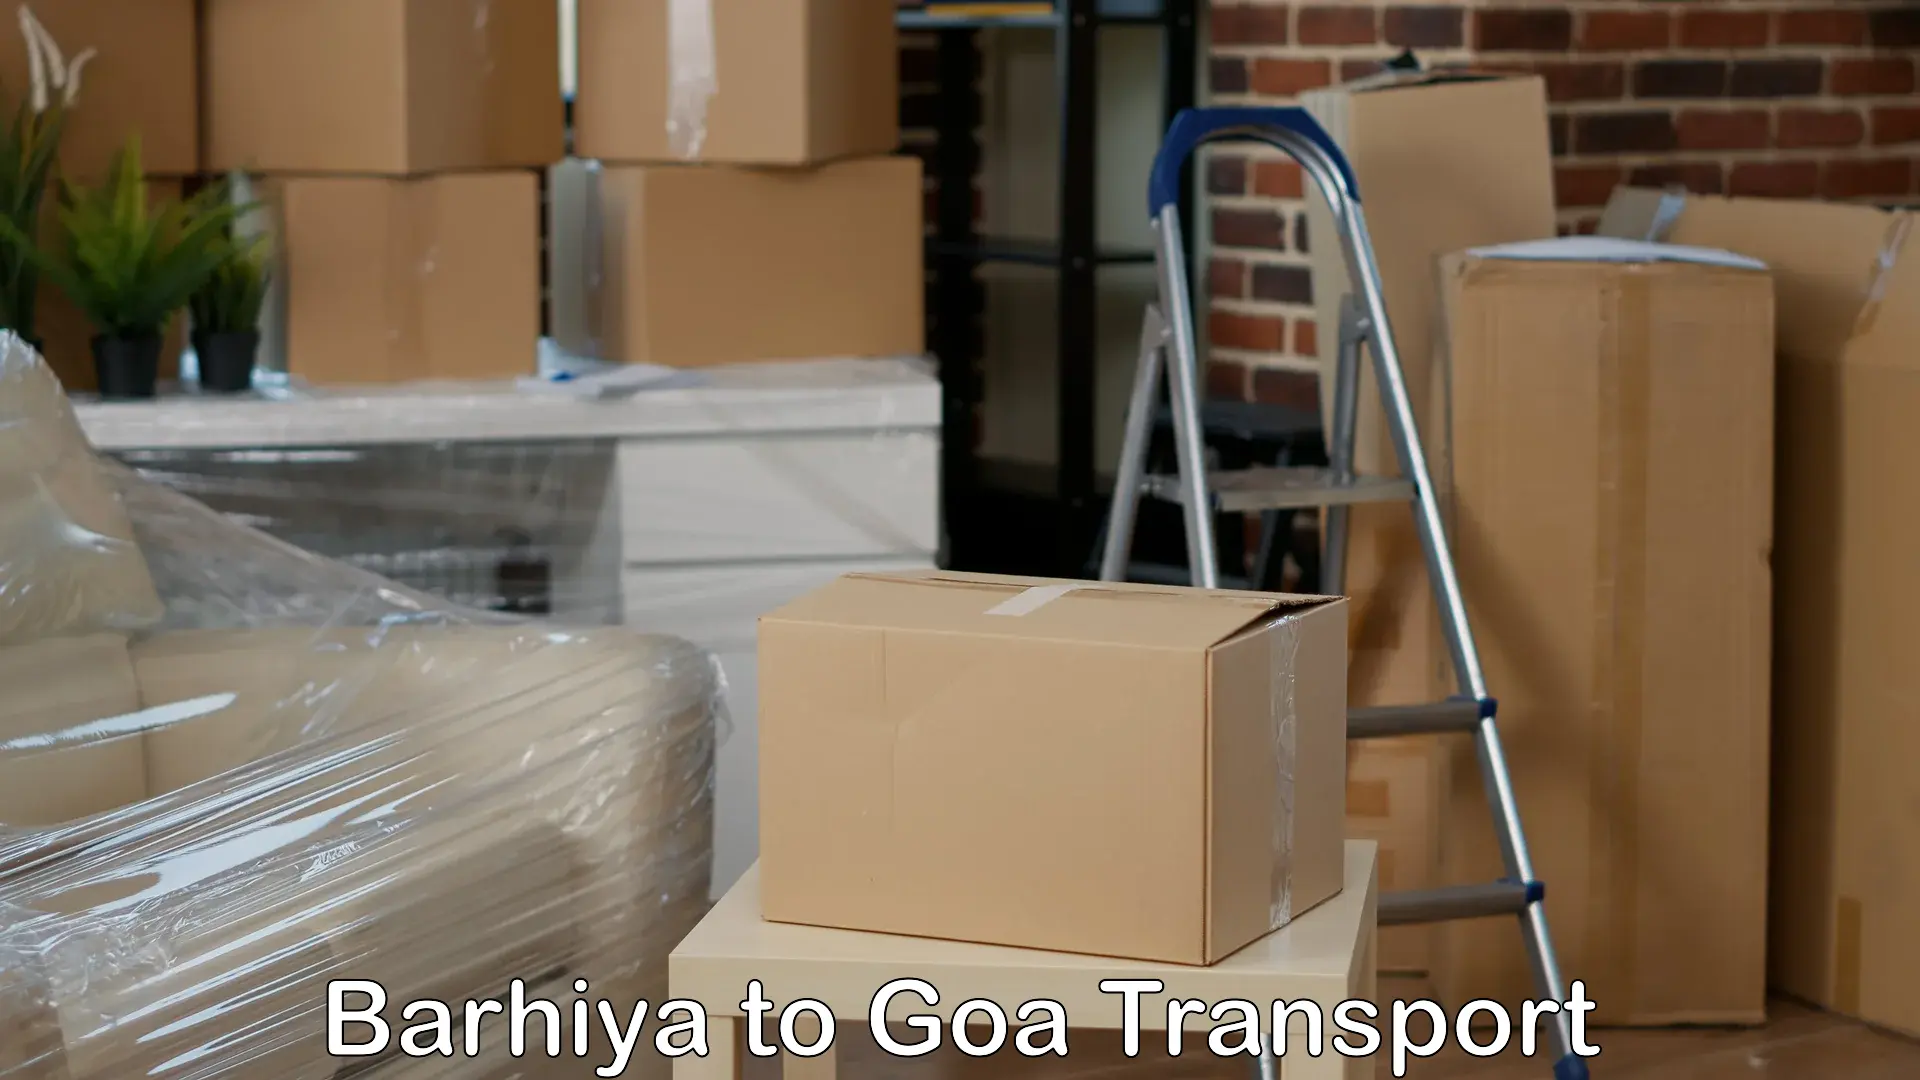 Road transport online services Barhiya to Panjim